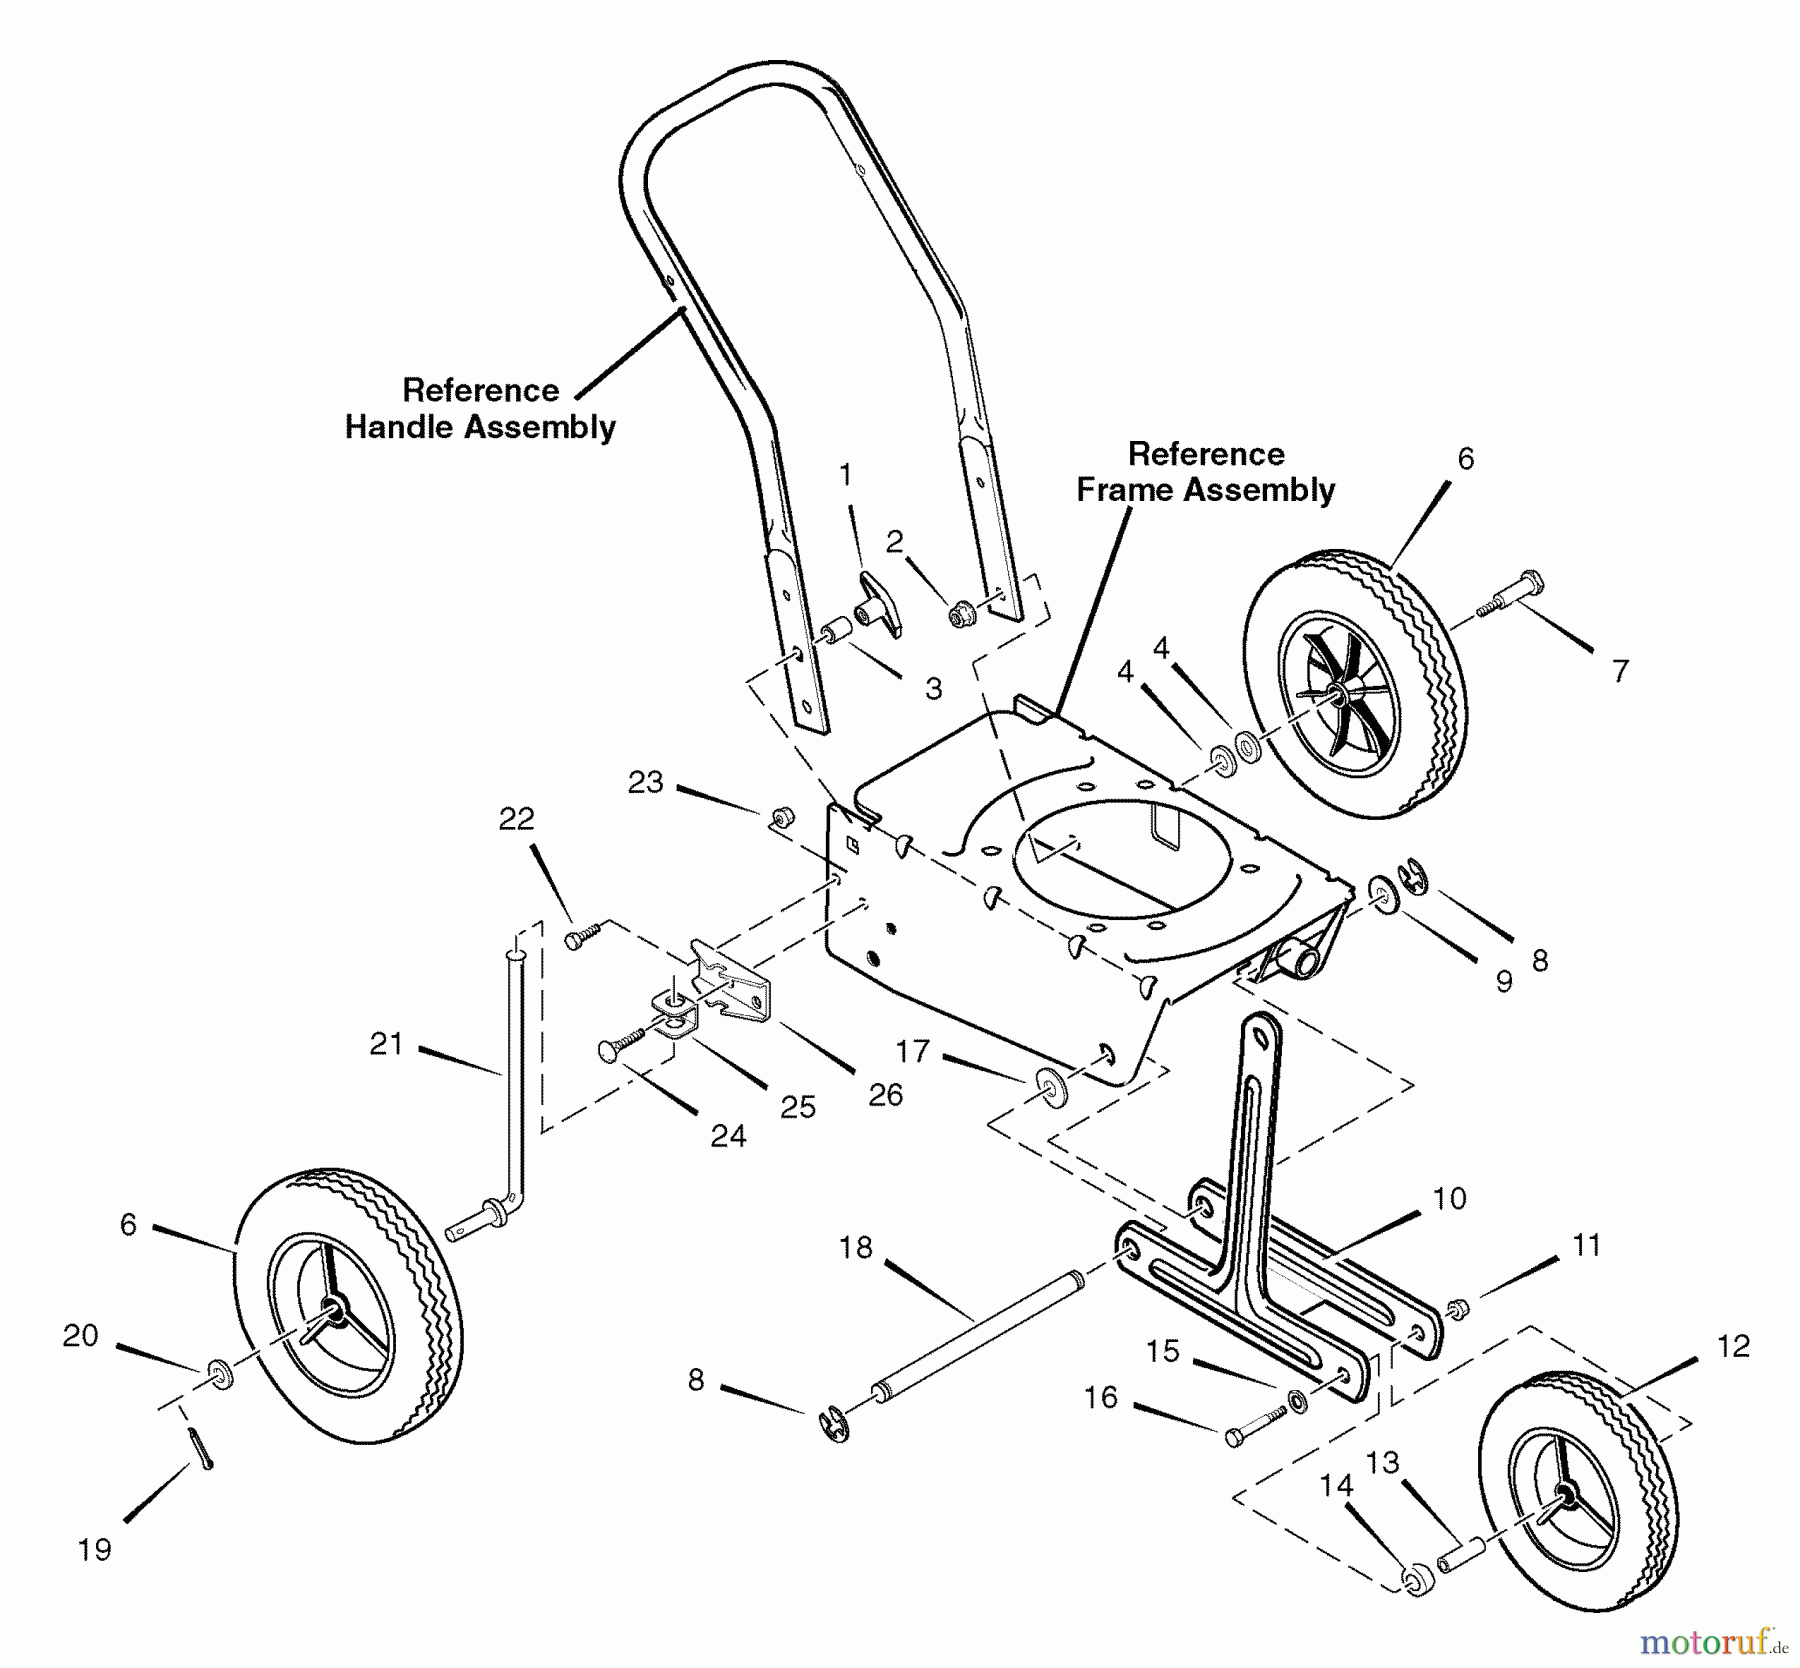  Murray Kantenschneider 536.772360 (77236000NB) - Craftsman Edger (2008) (Sears) Wheel Assembly